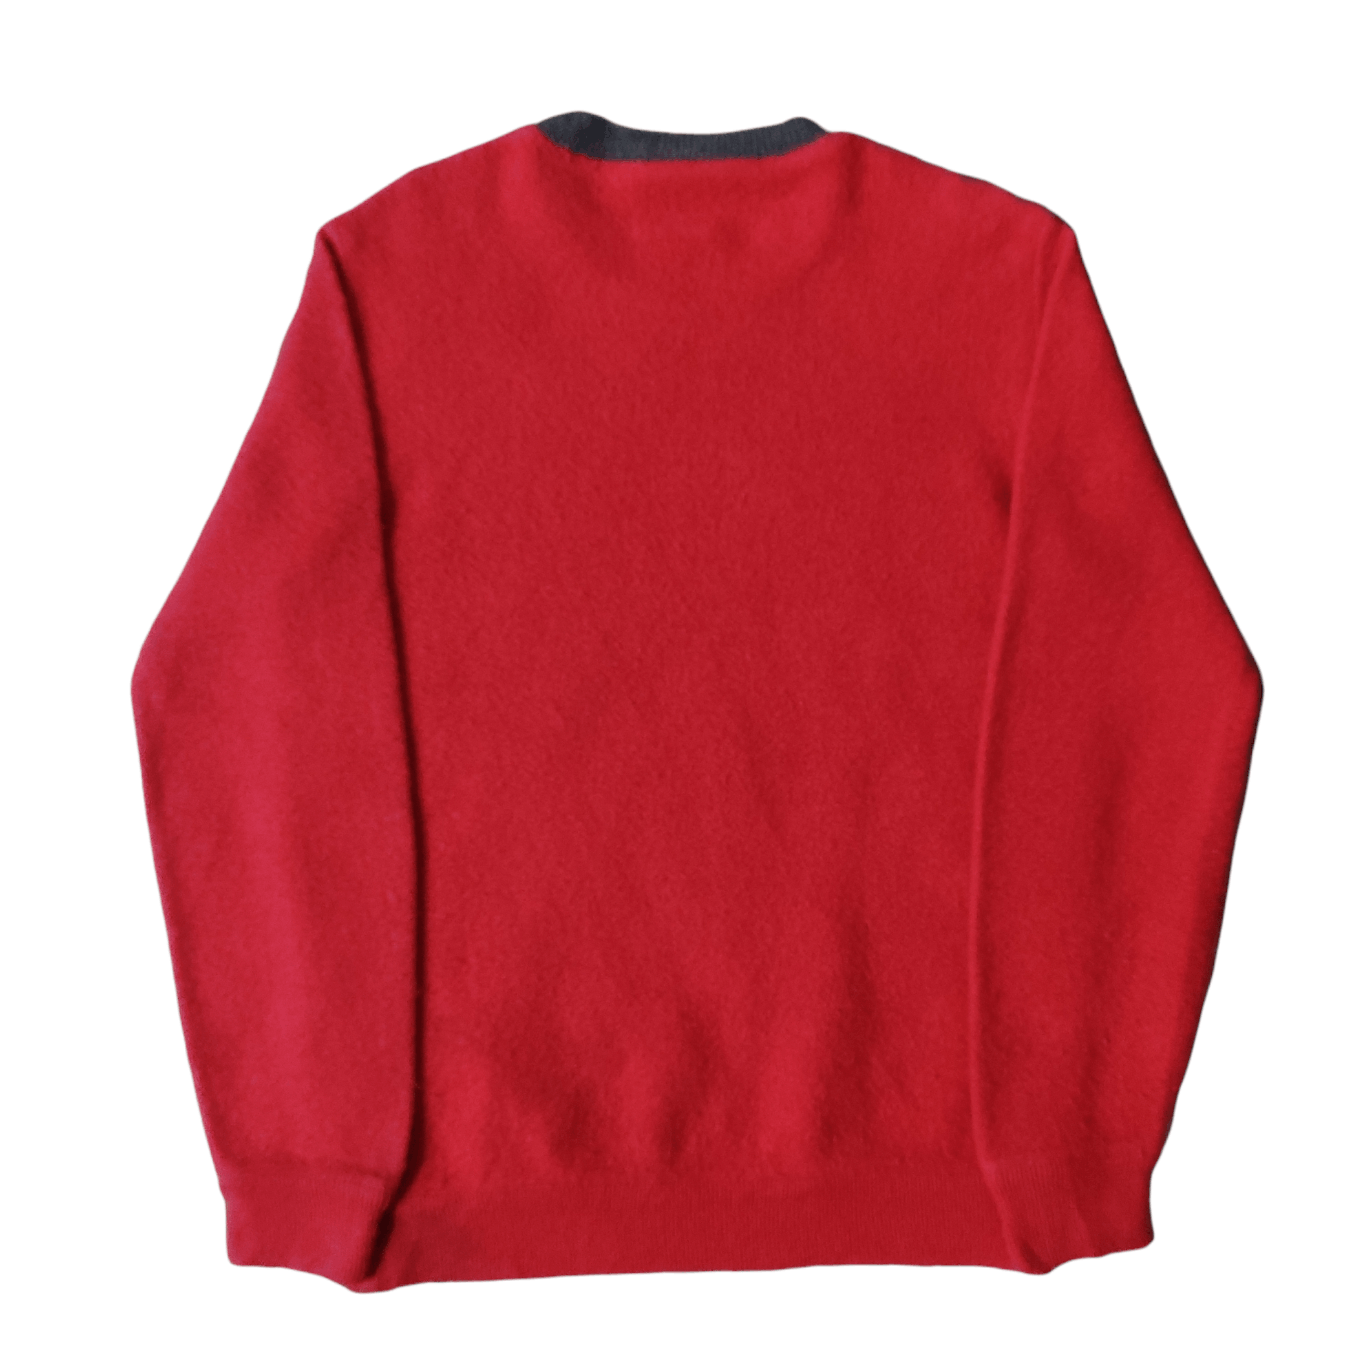 Vintage Chemise Lacoste Sweatshirt Jumper - 6